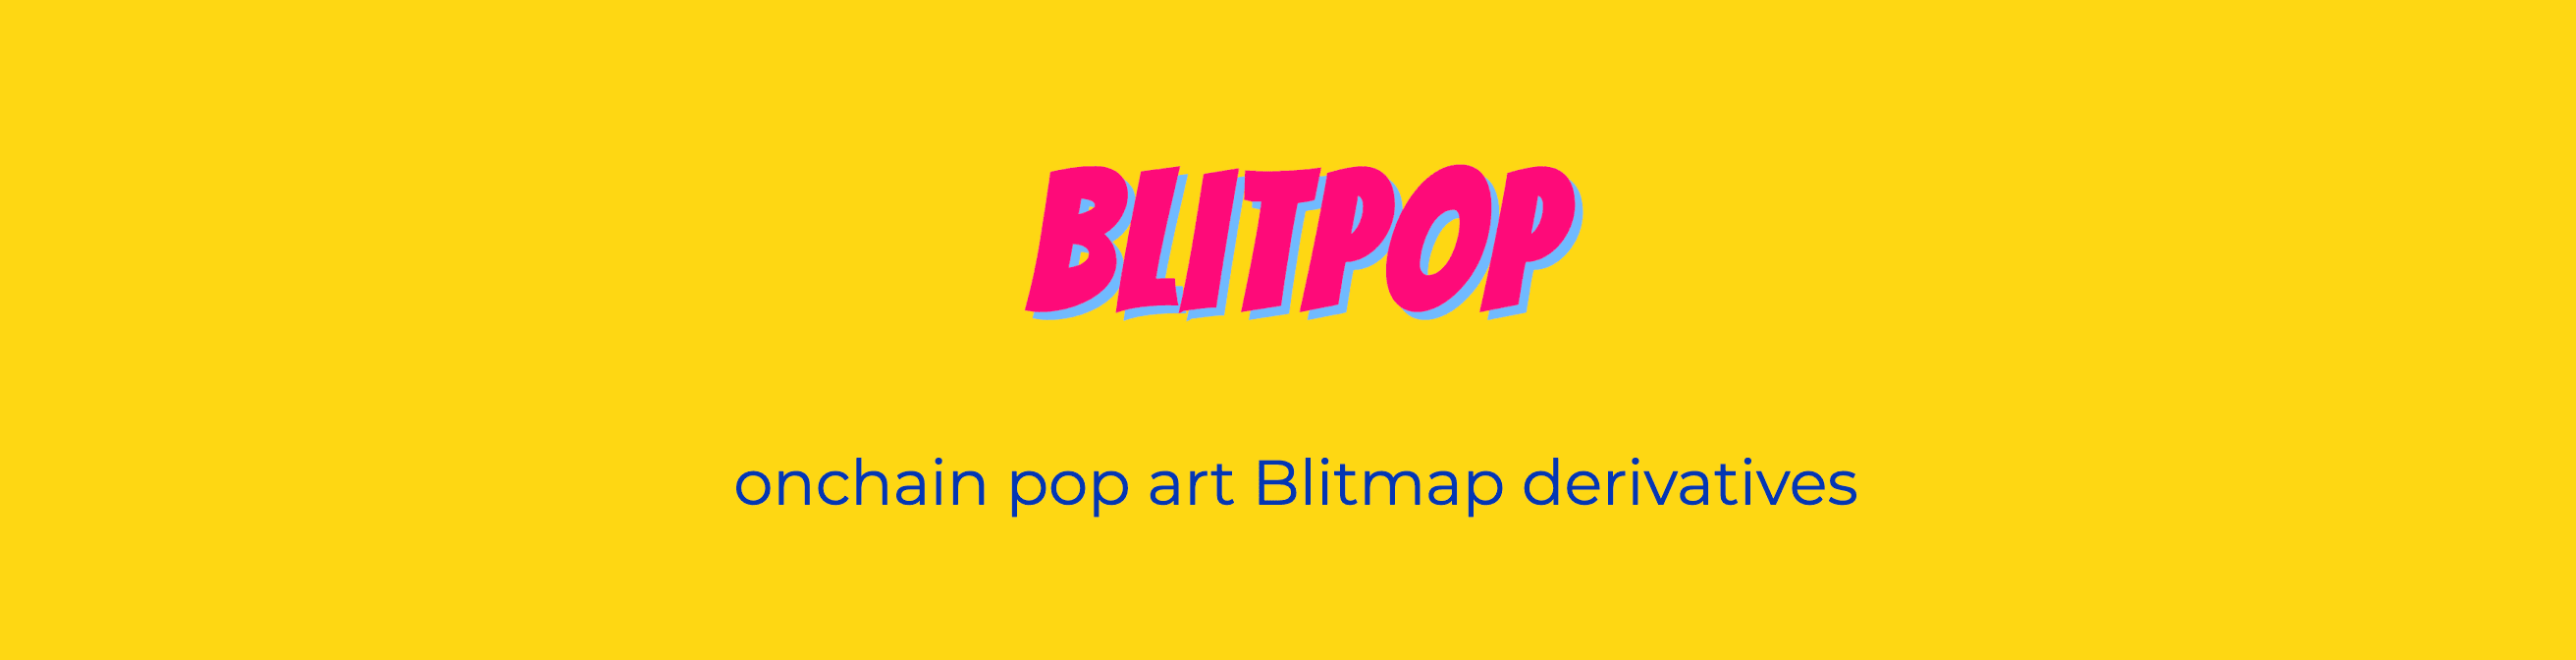 Blitpop